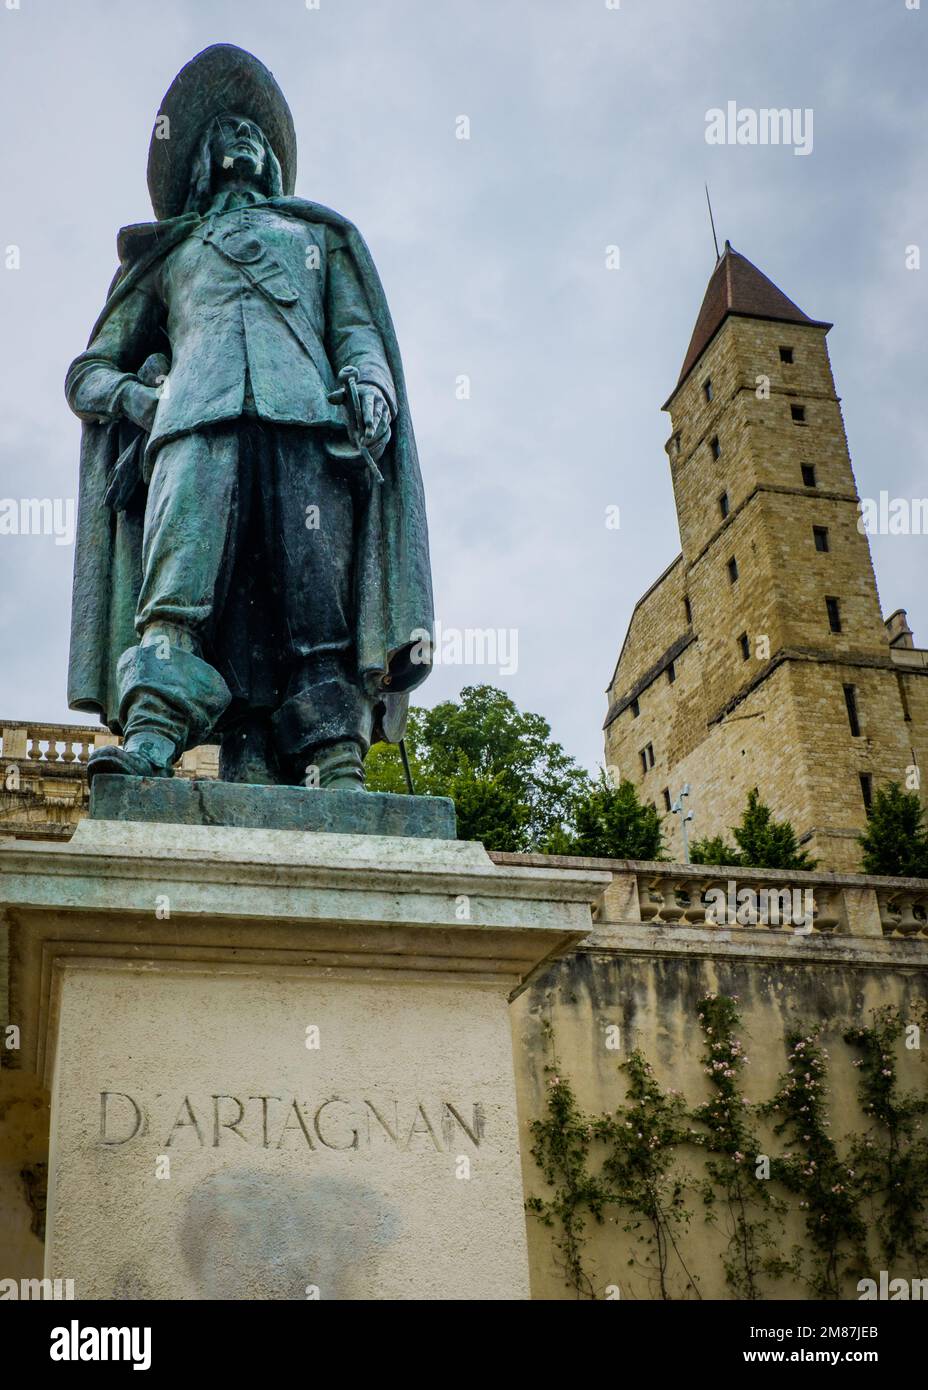 Statue des Musketeer d'Artagnan in der Nähe des Escalier Monumental in Auch, im Süden Frankreichs (Gers) Stockfoto